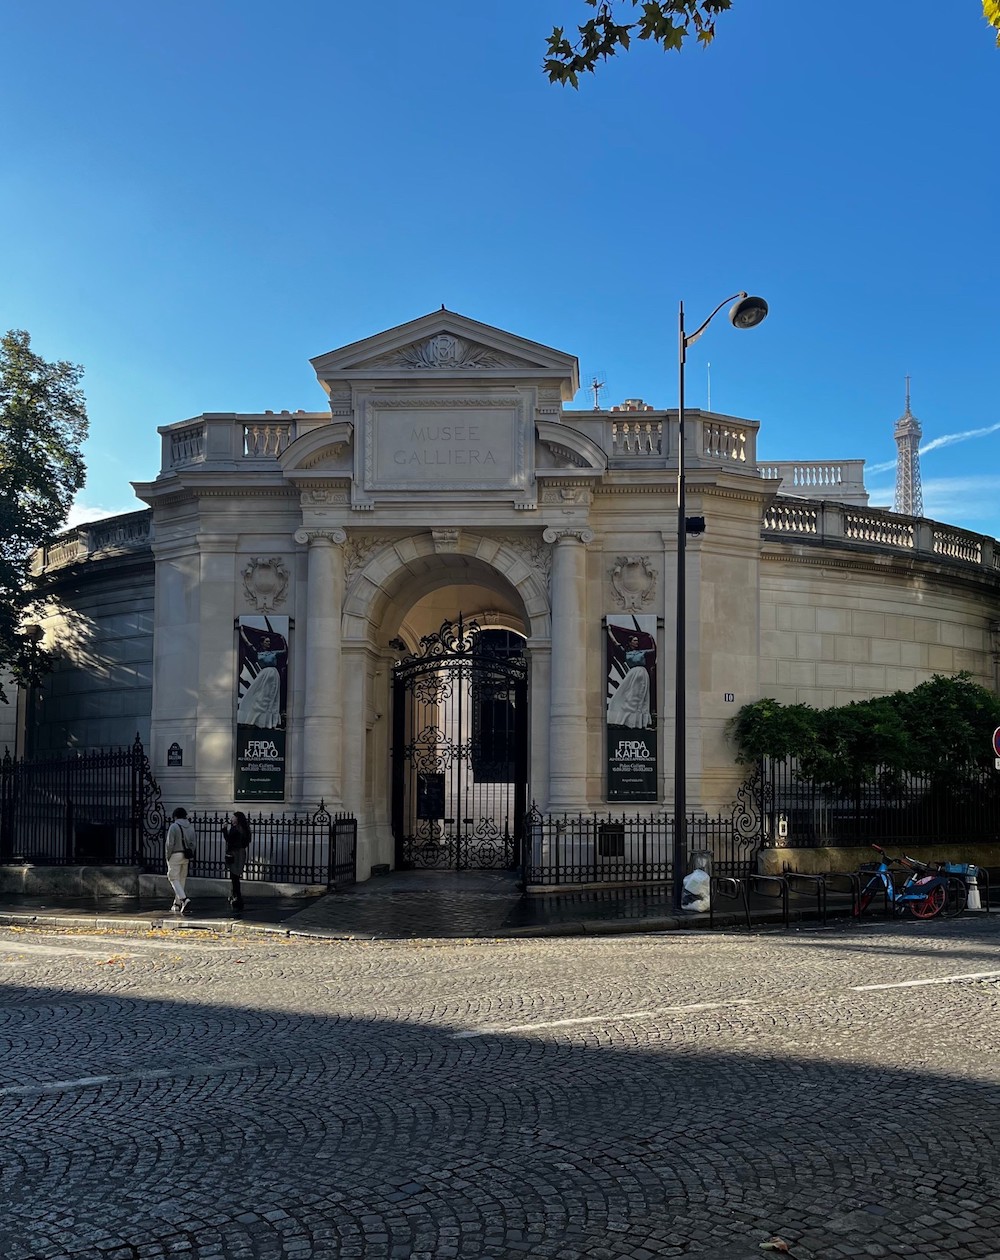 フランス、シャンゼリゼ大通りから少し離れたところにある「ガリエラ美術館」。